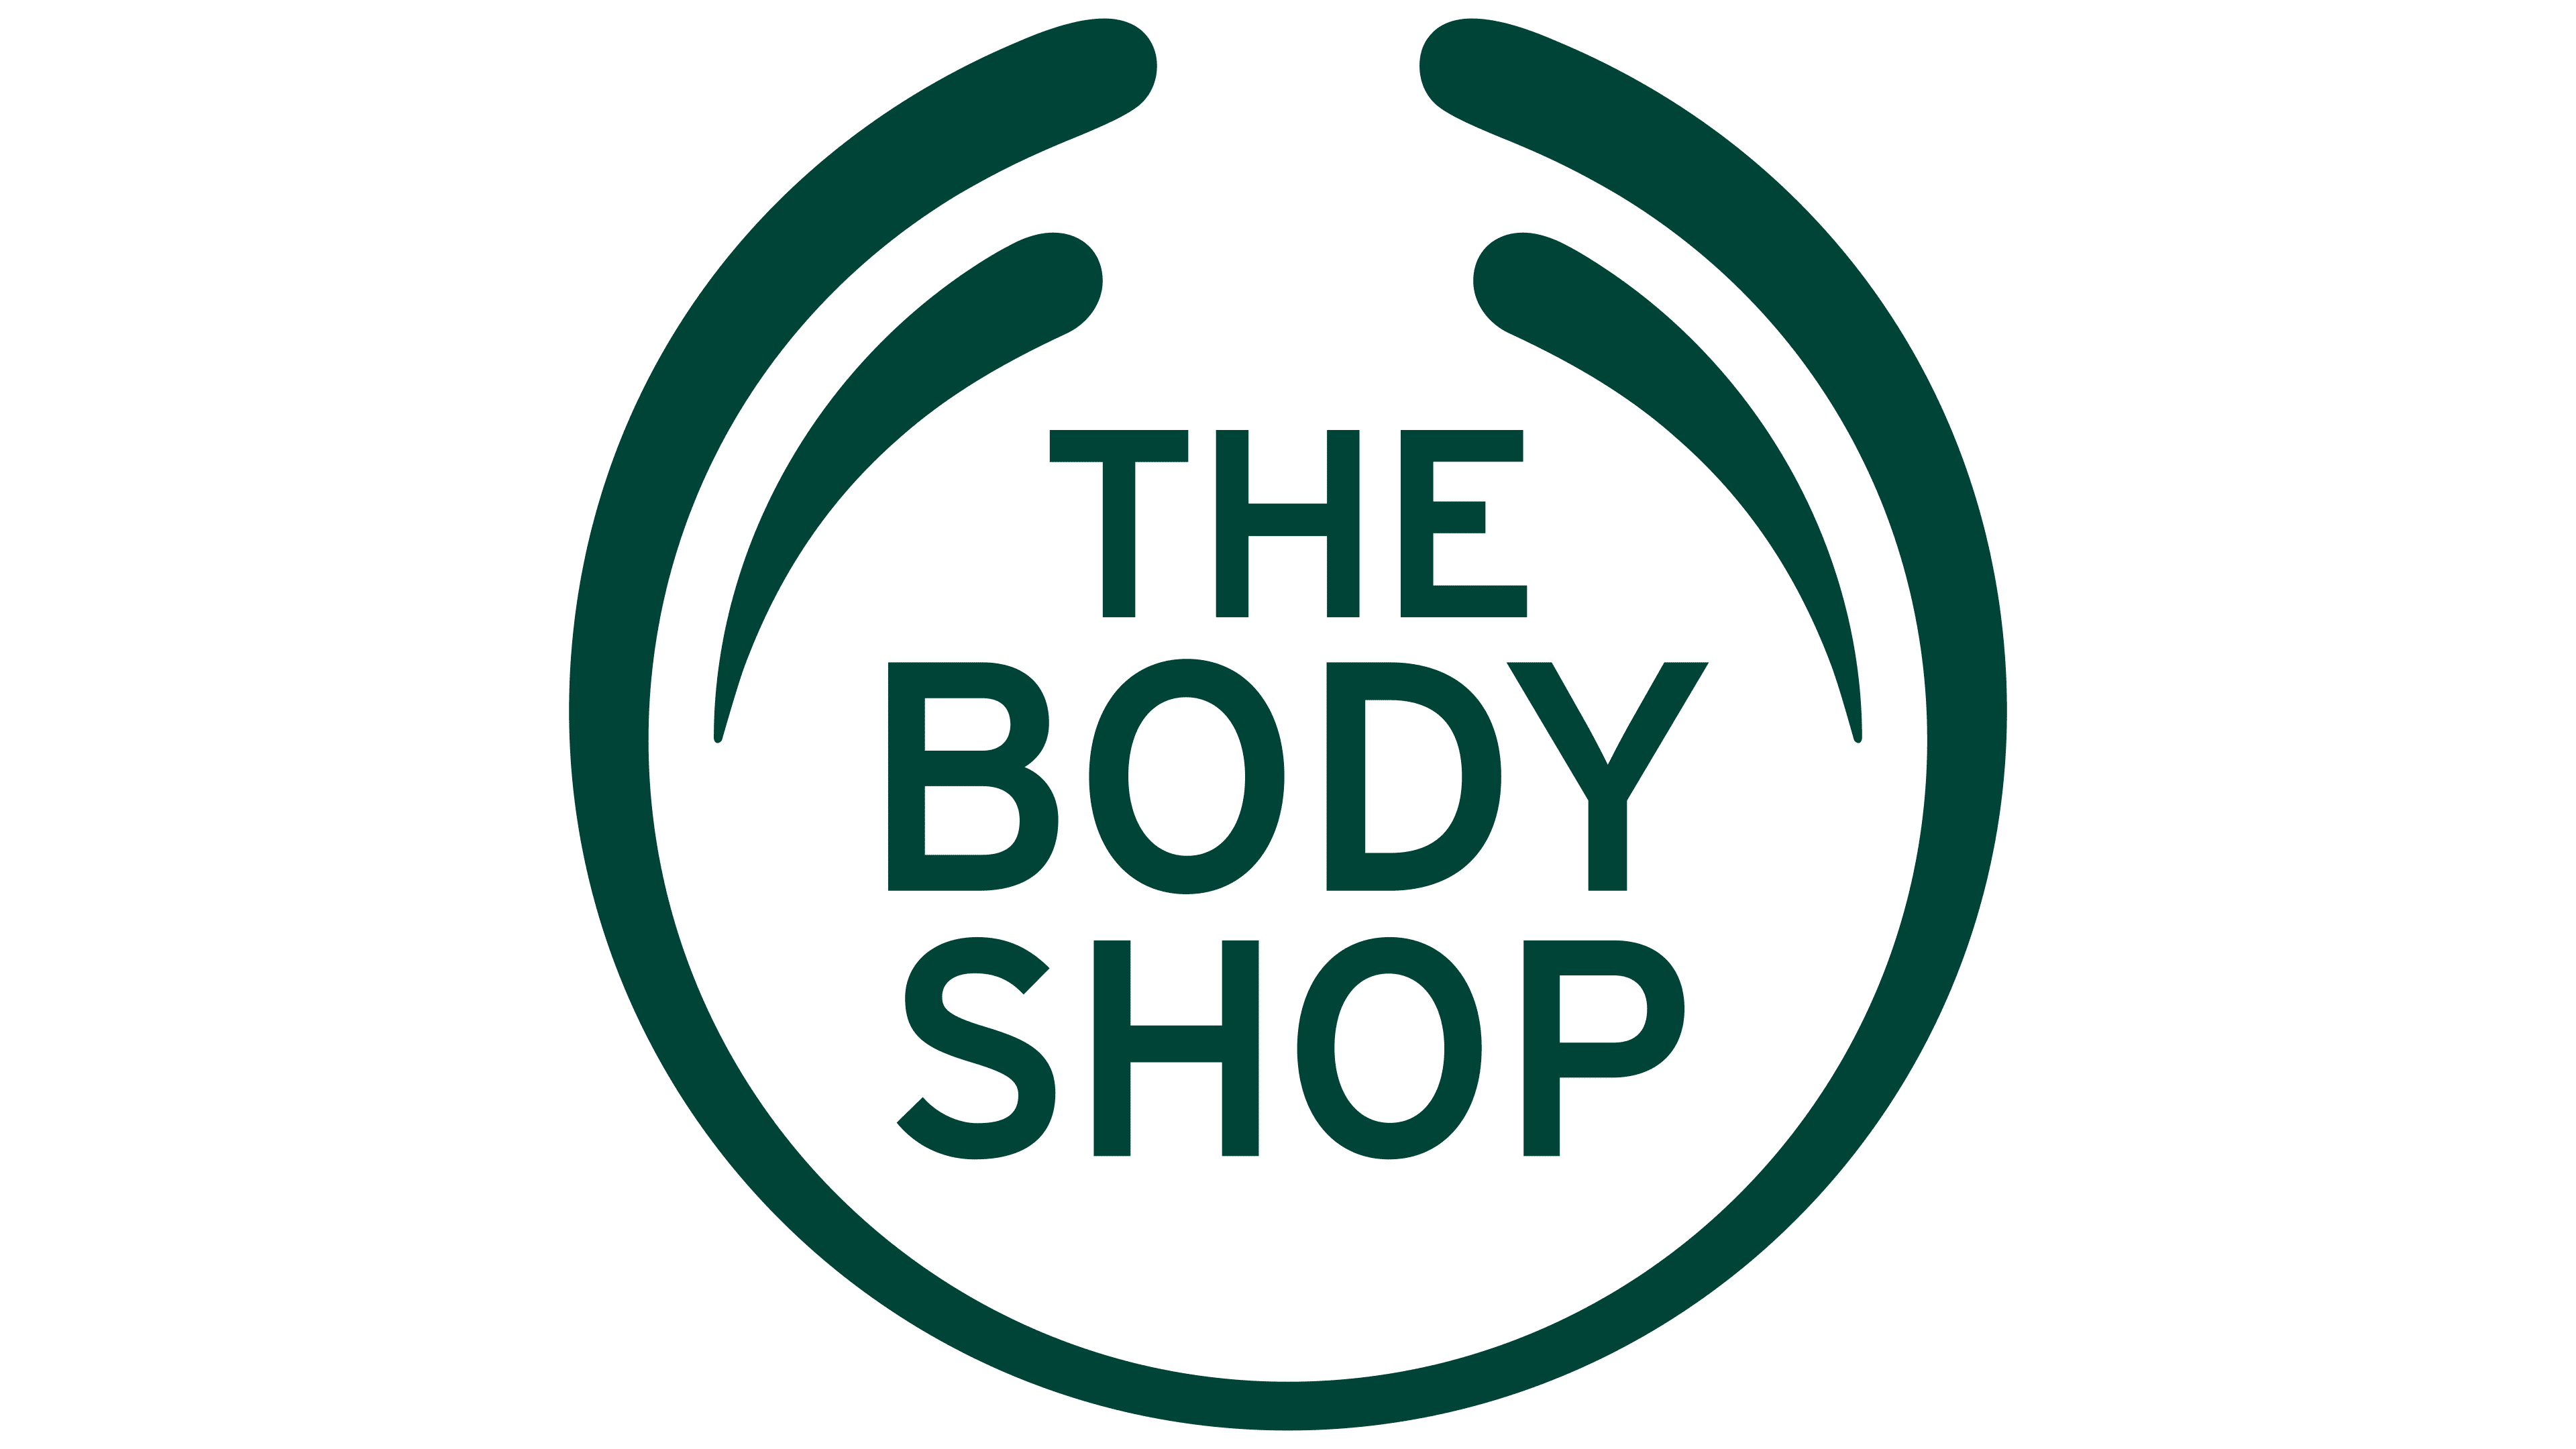 The body shop jusqu'a 54% de remise 